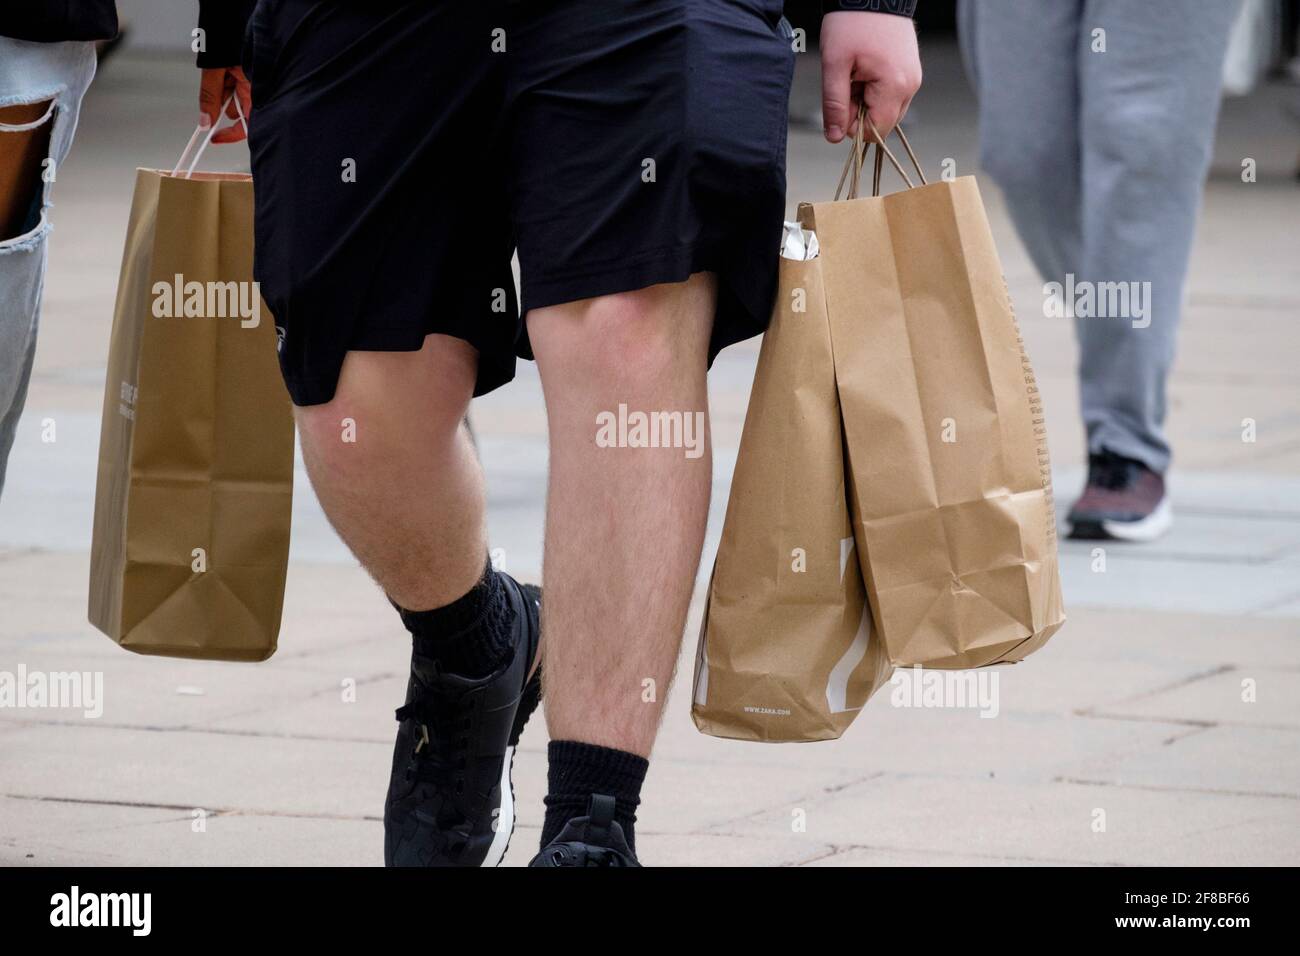 Carta marrone, sacchetti riciclabili, Regno Unito. Foto Stock